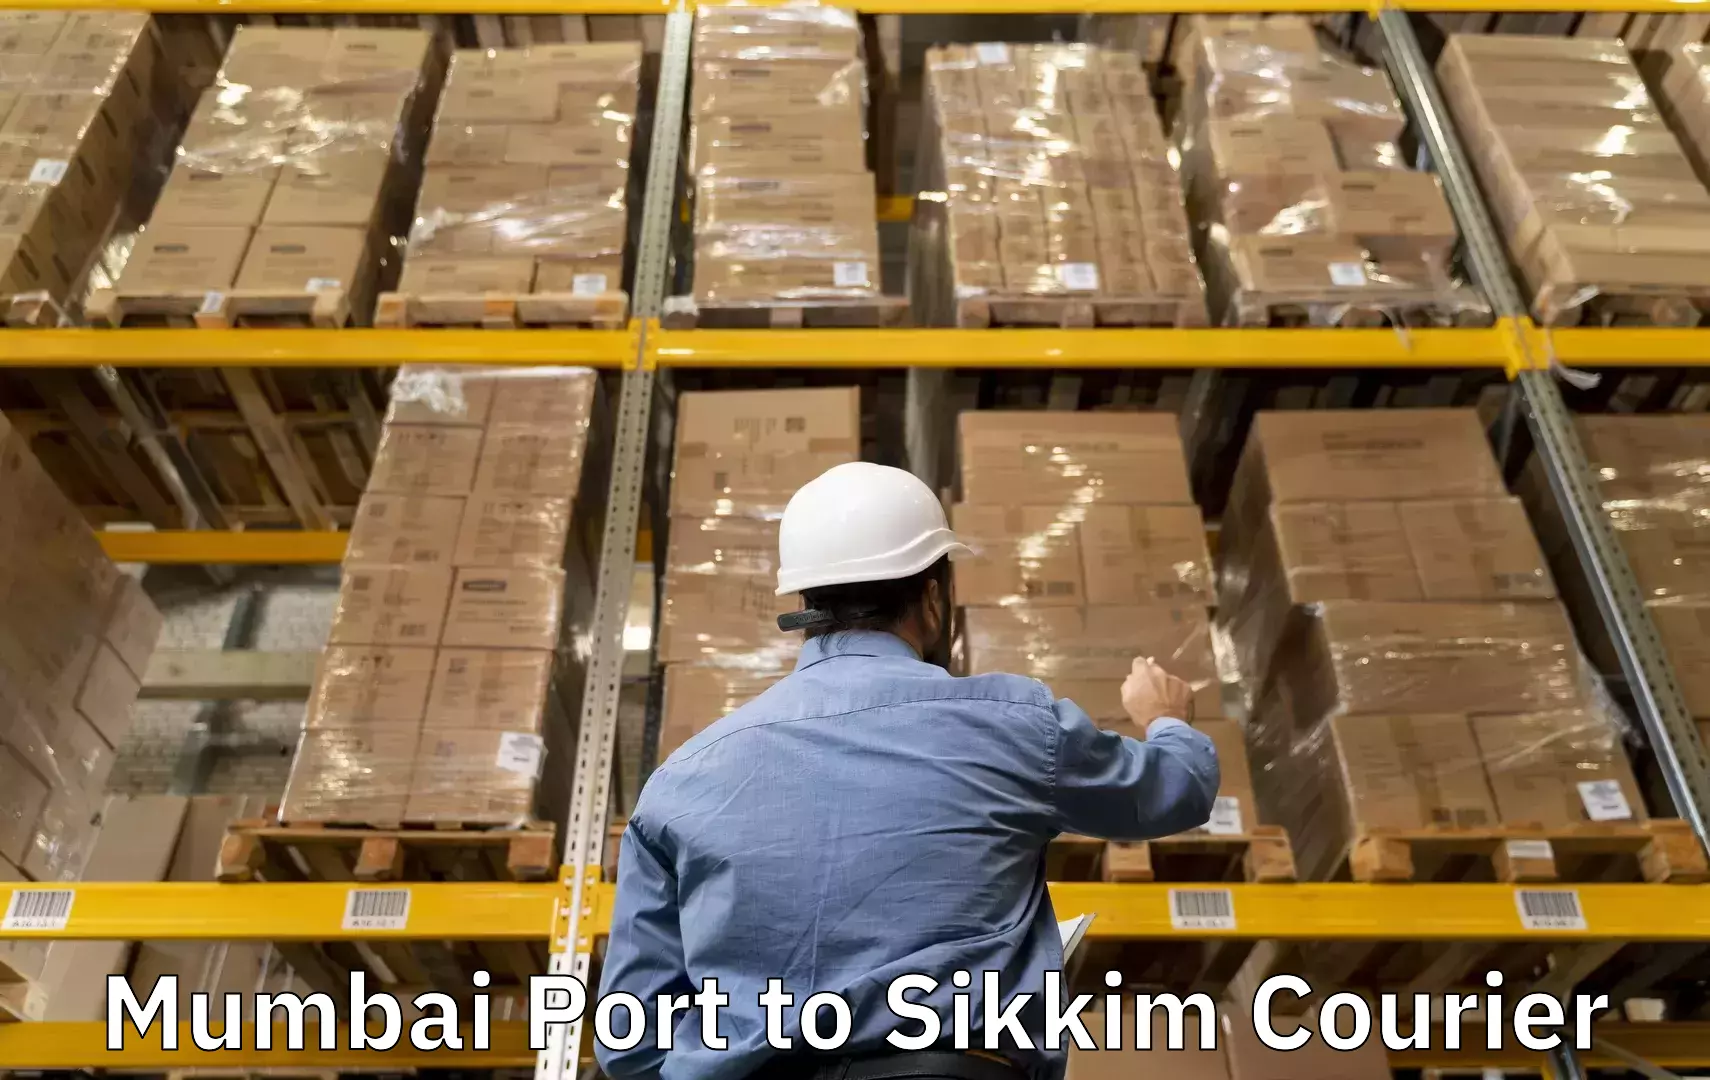 Luggage transfer service Mumbai Port to Sikkim